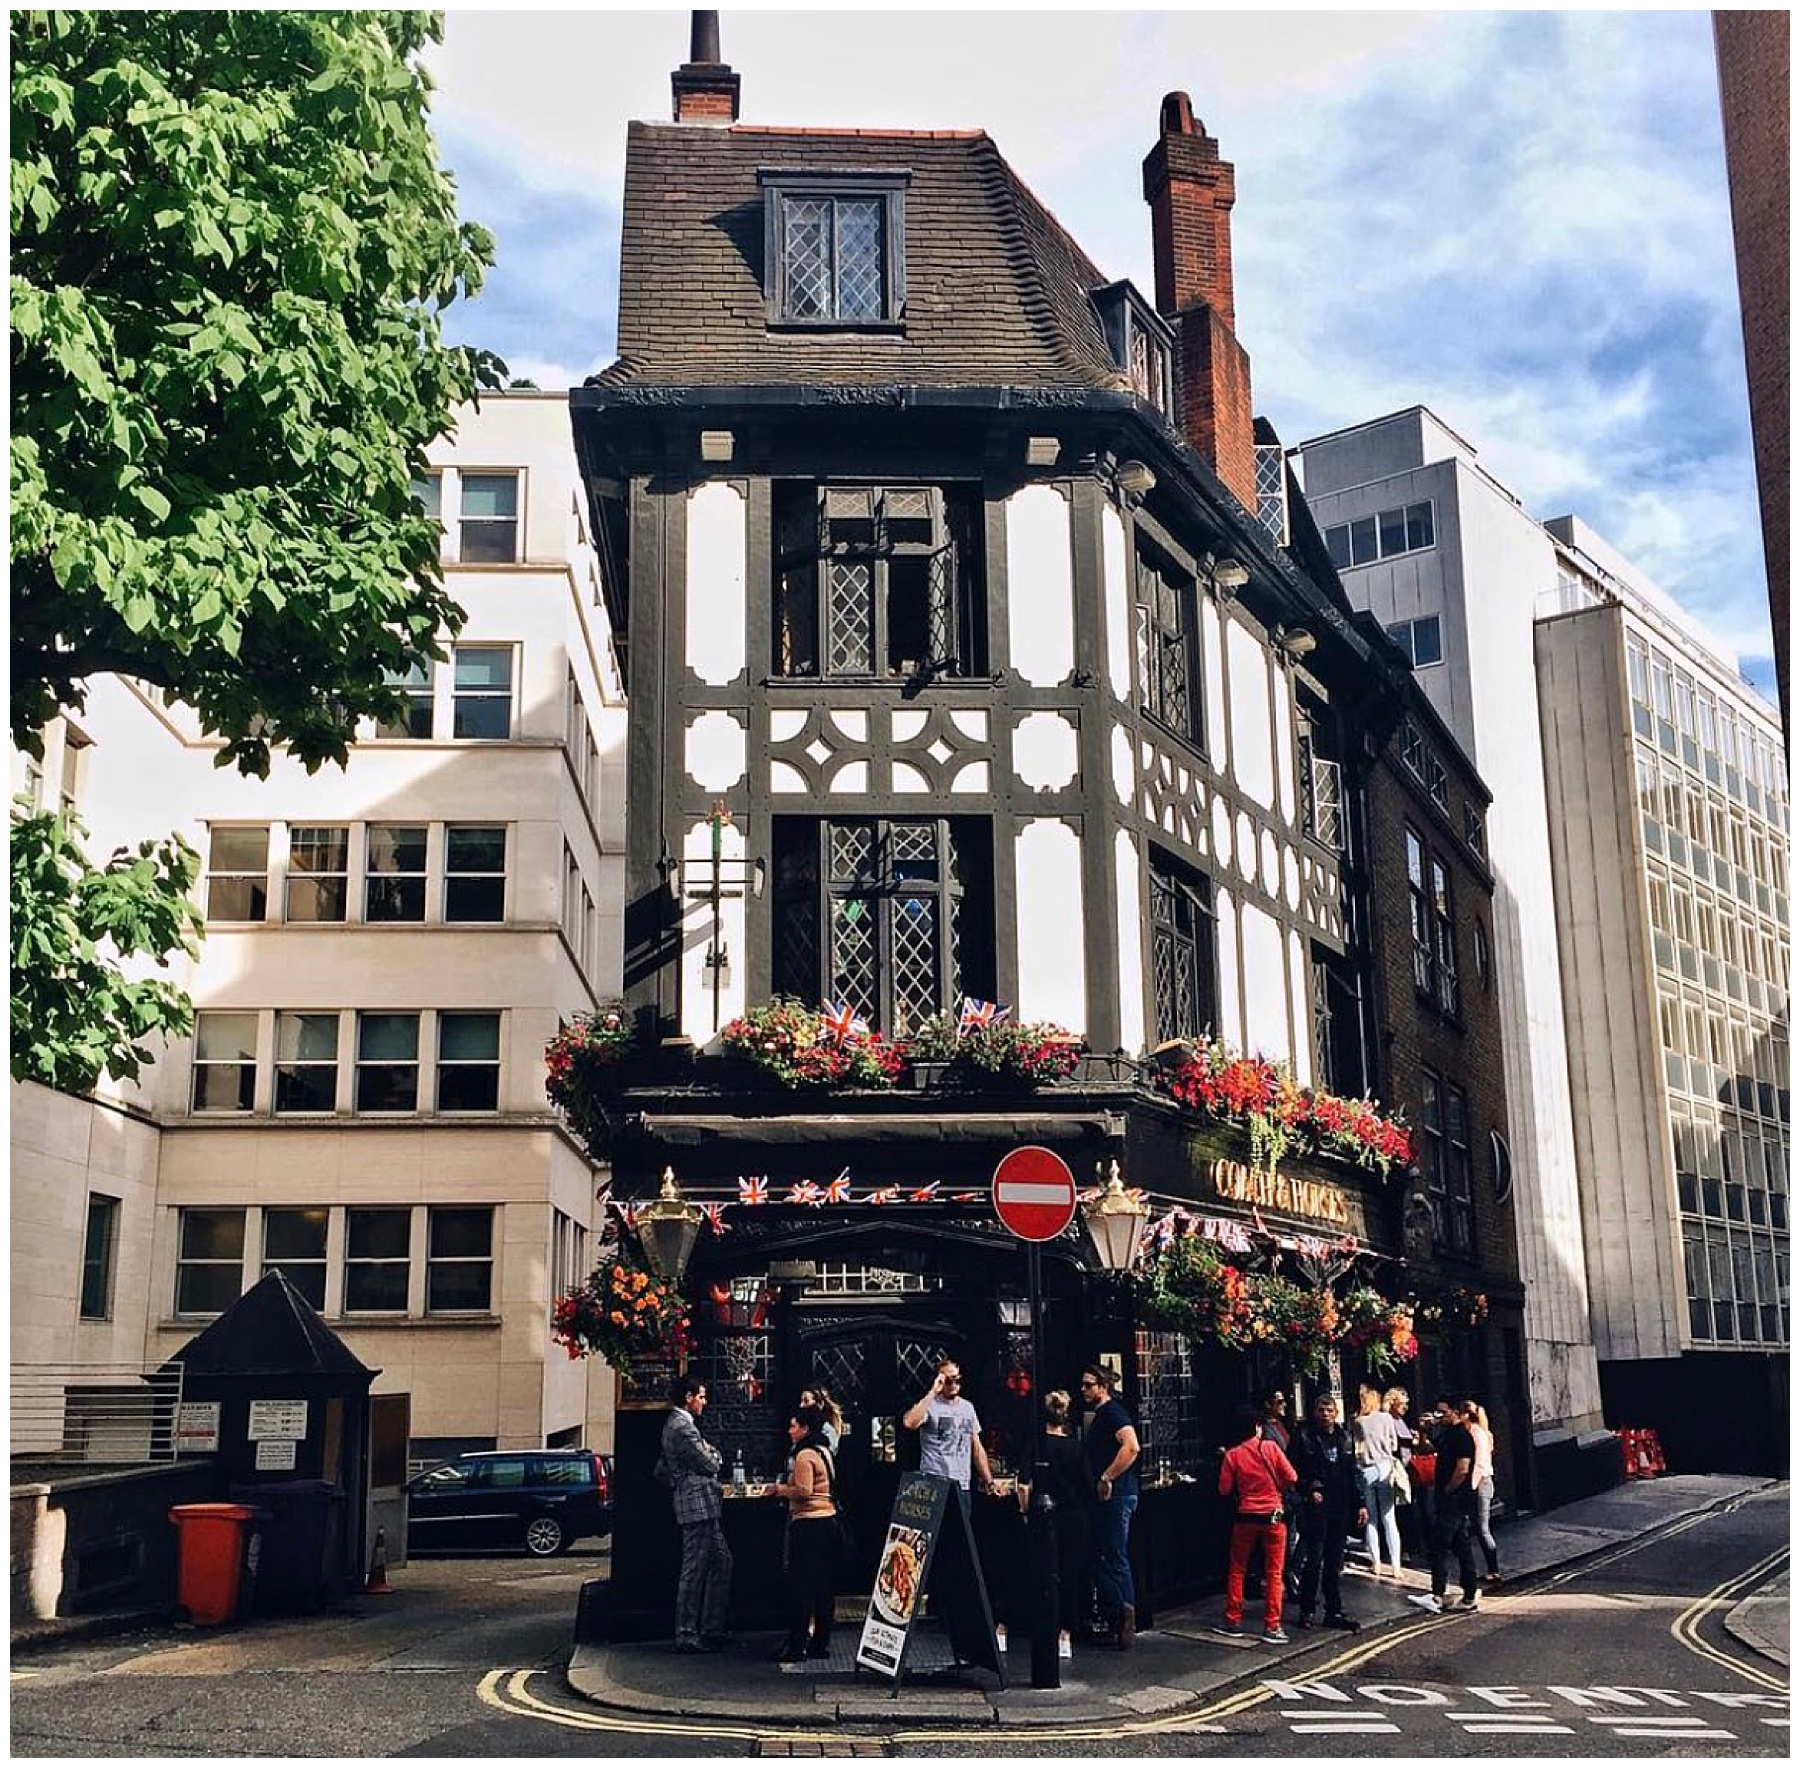 John Philp, London, Pubs, Guide